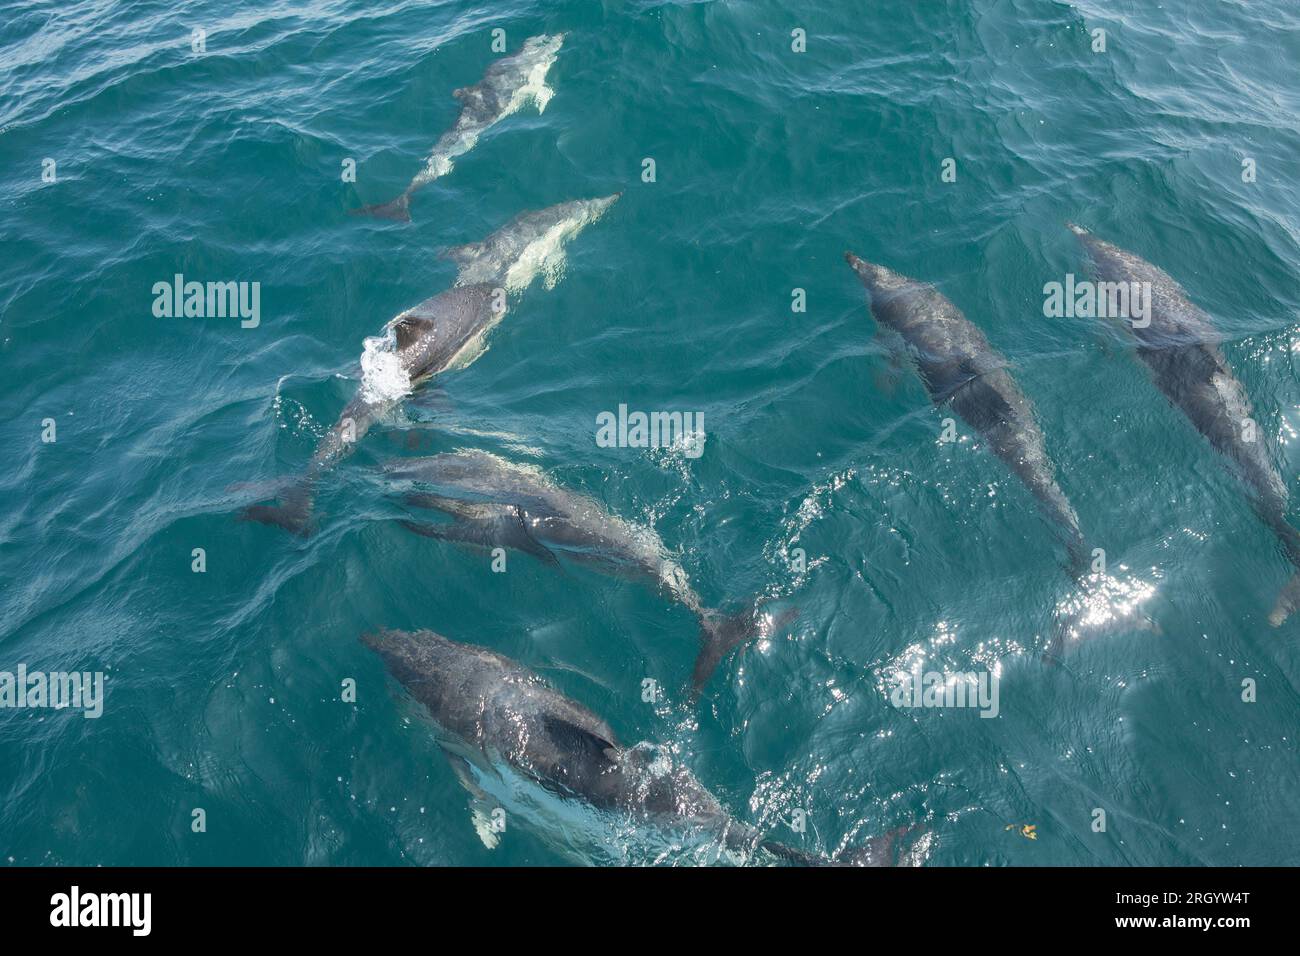 Delfini comuni dal becco corto, Delphinus delphis, nella baia di Lyme che erano impegnati in corteggiamento e comportamento di accoppiamento. Lyme Bay Dorset Inghilterra Regno Unito GB Foto Stock